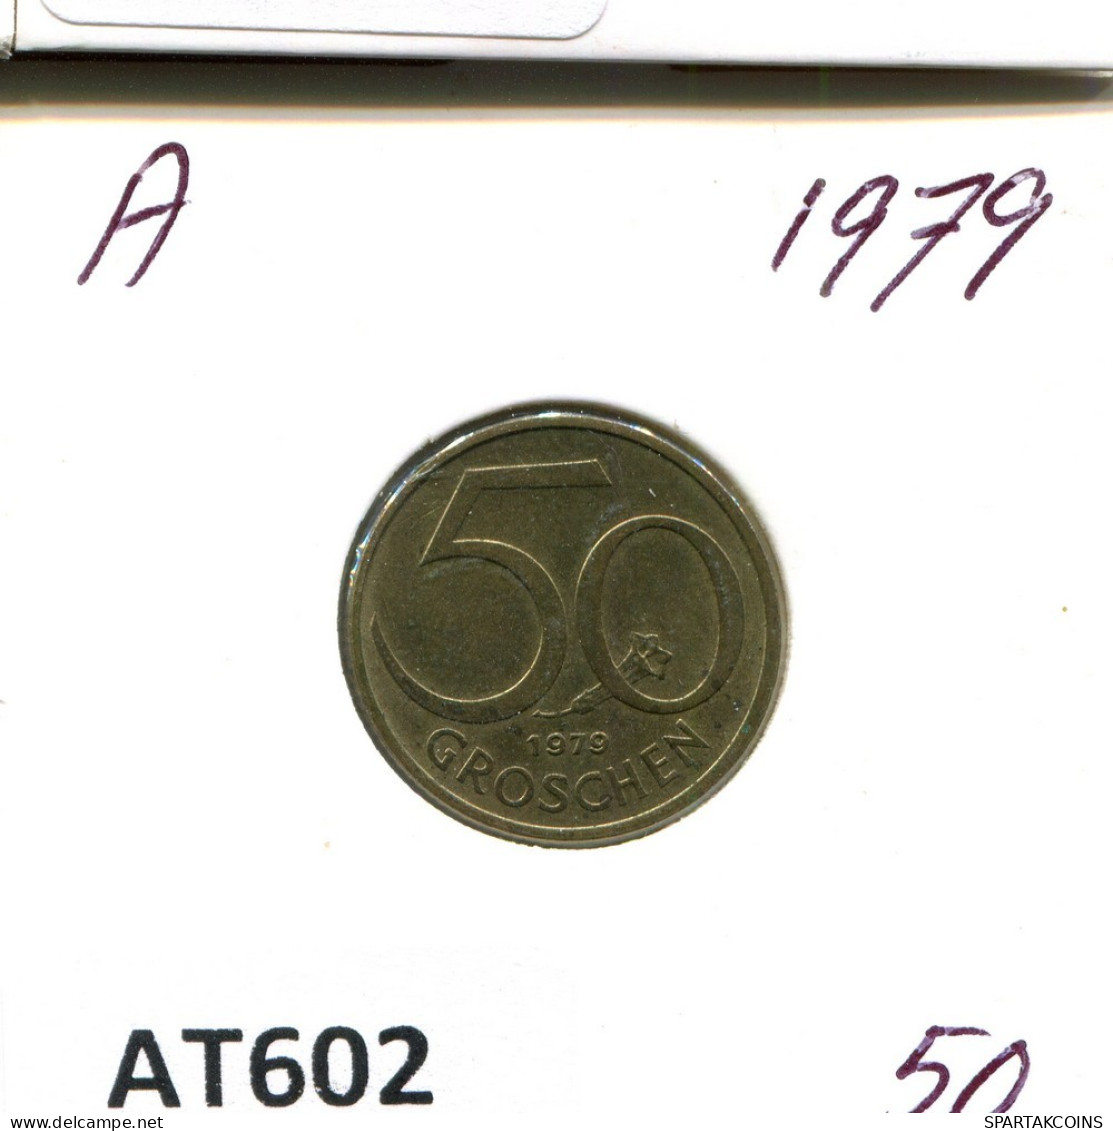 50 GROSCHEN 1979 AUSTRIA Coin #AT602.U.A - Oesterreich